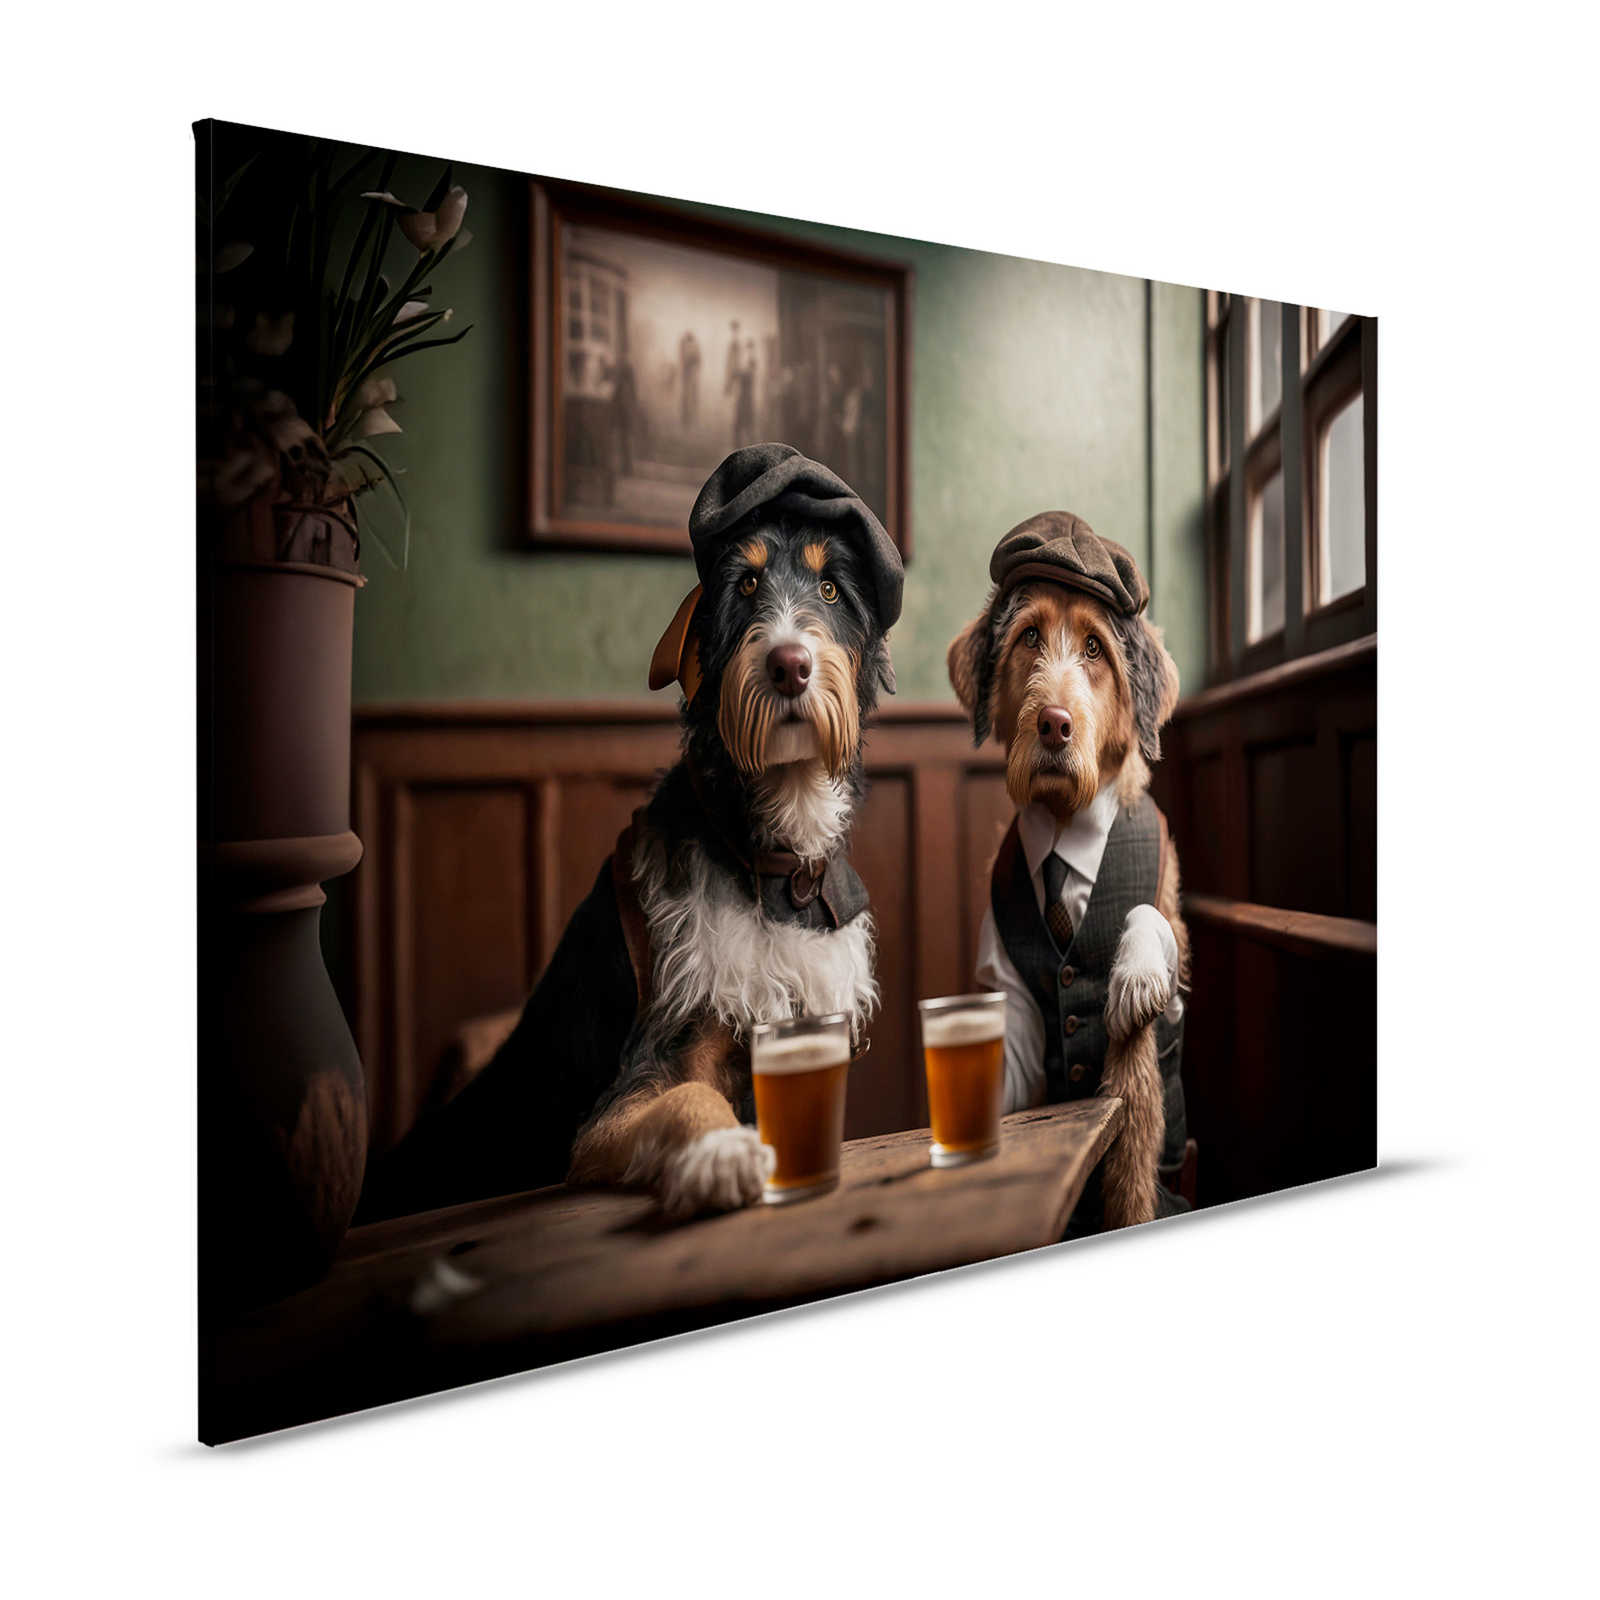 KI Pintura en lienzo »Doggy Bar 3« - 120 cm x 80 cm
